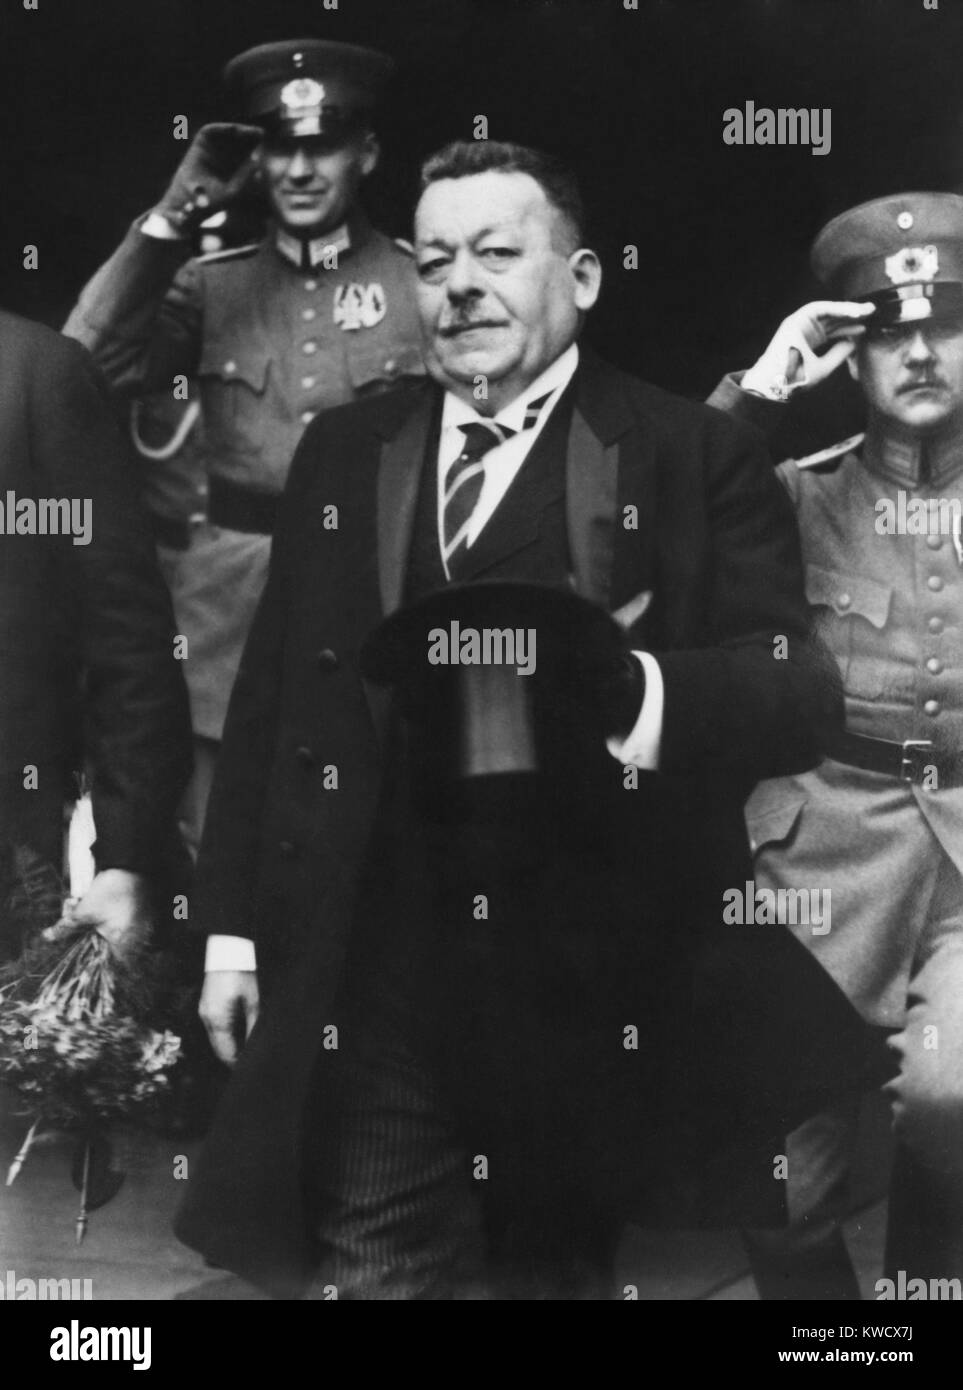 Friedrich Ebert, deutscher Politiker und Führer der Sozialdemokratischen Partei während WK1. Nach dem Krieg war er eine wichtige Rolle in der deutschen Revolution gespielt und trat als Präsident der Bundesrepublik Deutschland von 1919 bis zu seinem Tod im Jahre 1925 (BSLOC 2017 2 59) Stockfoto